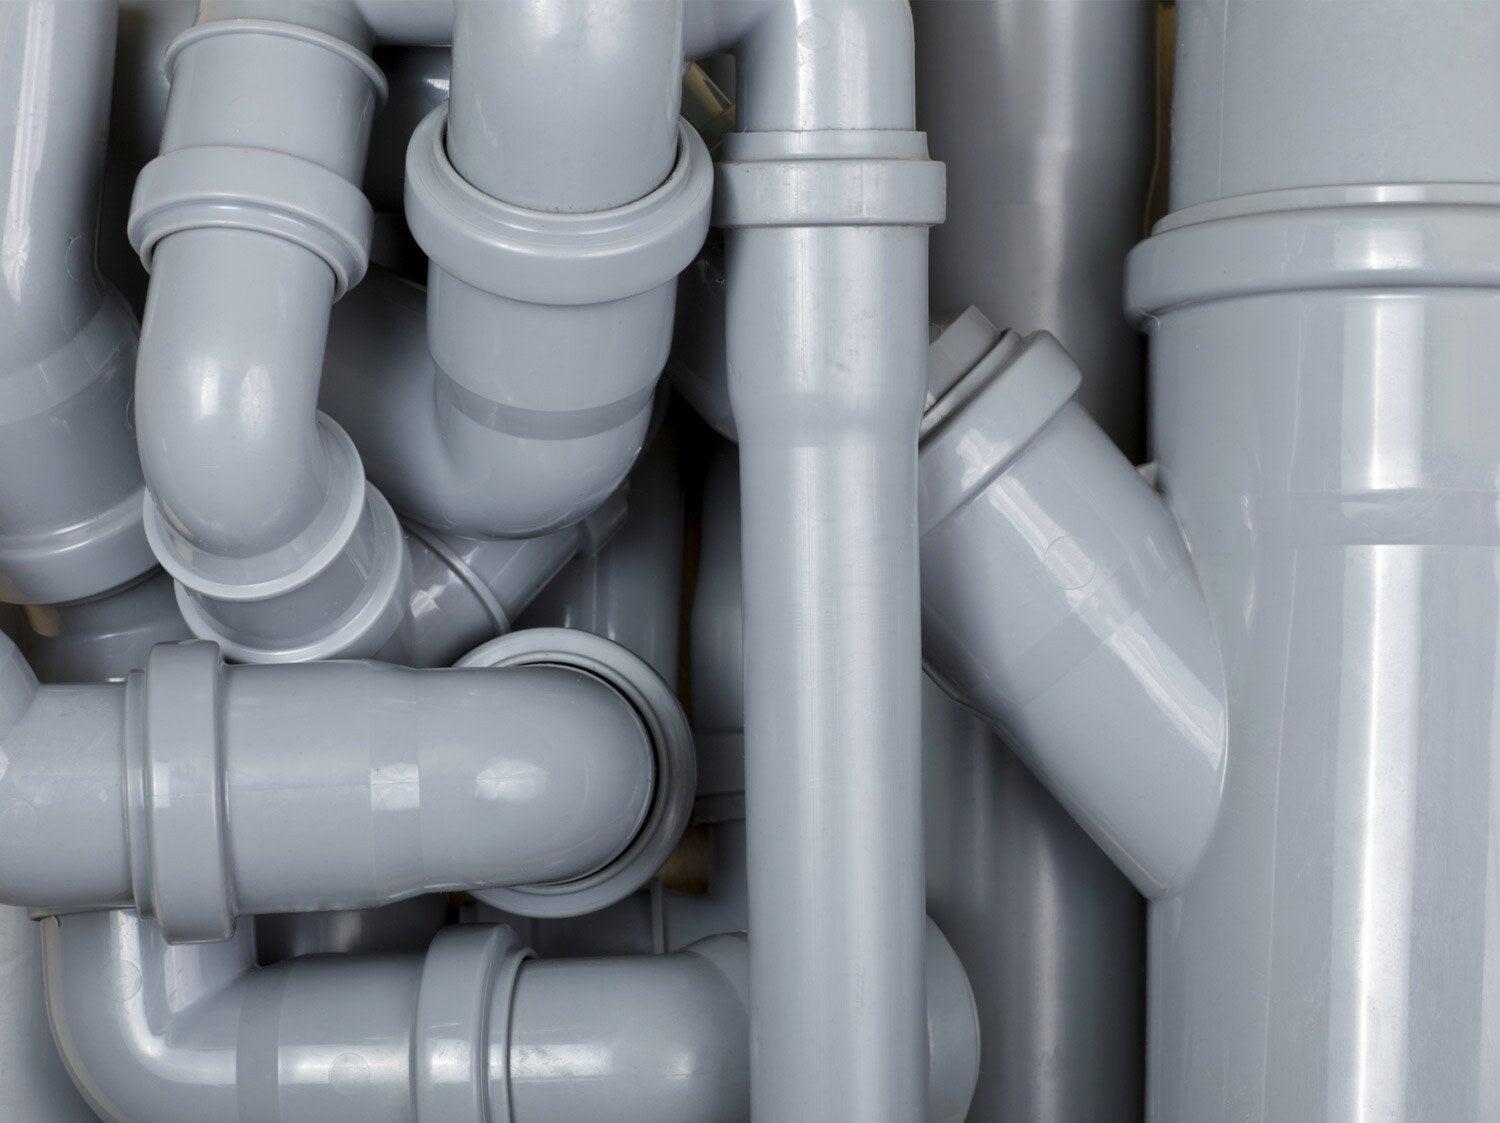 Comment créer une évacuation d'évier en tubes PVC ?